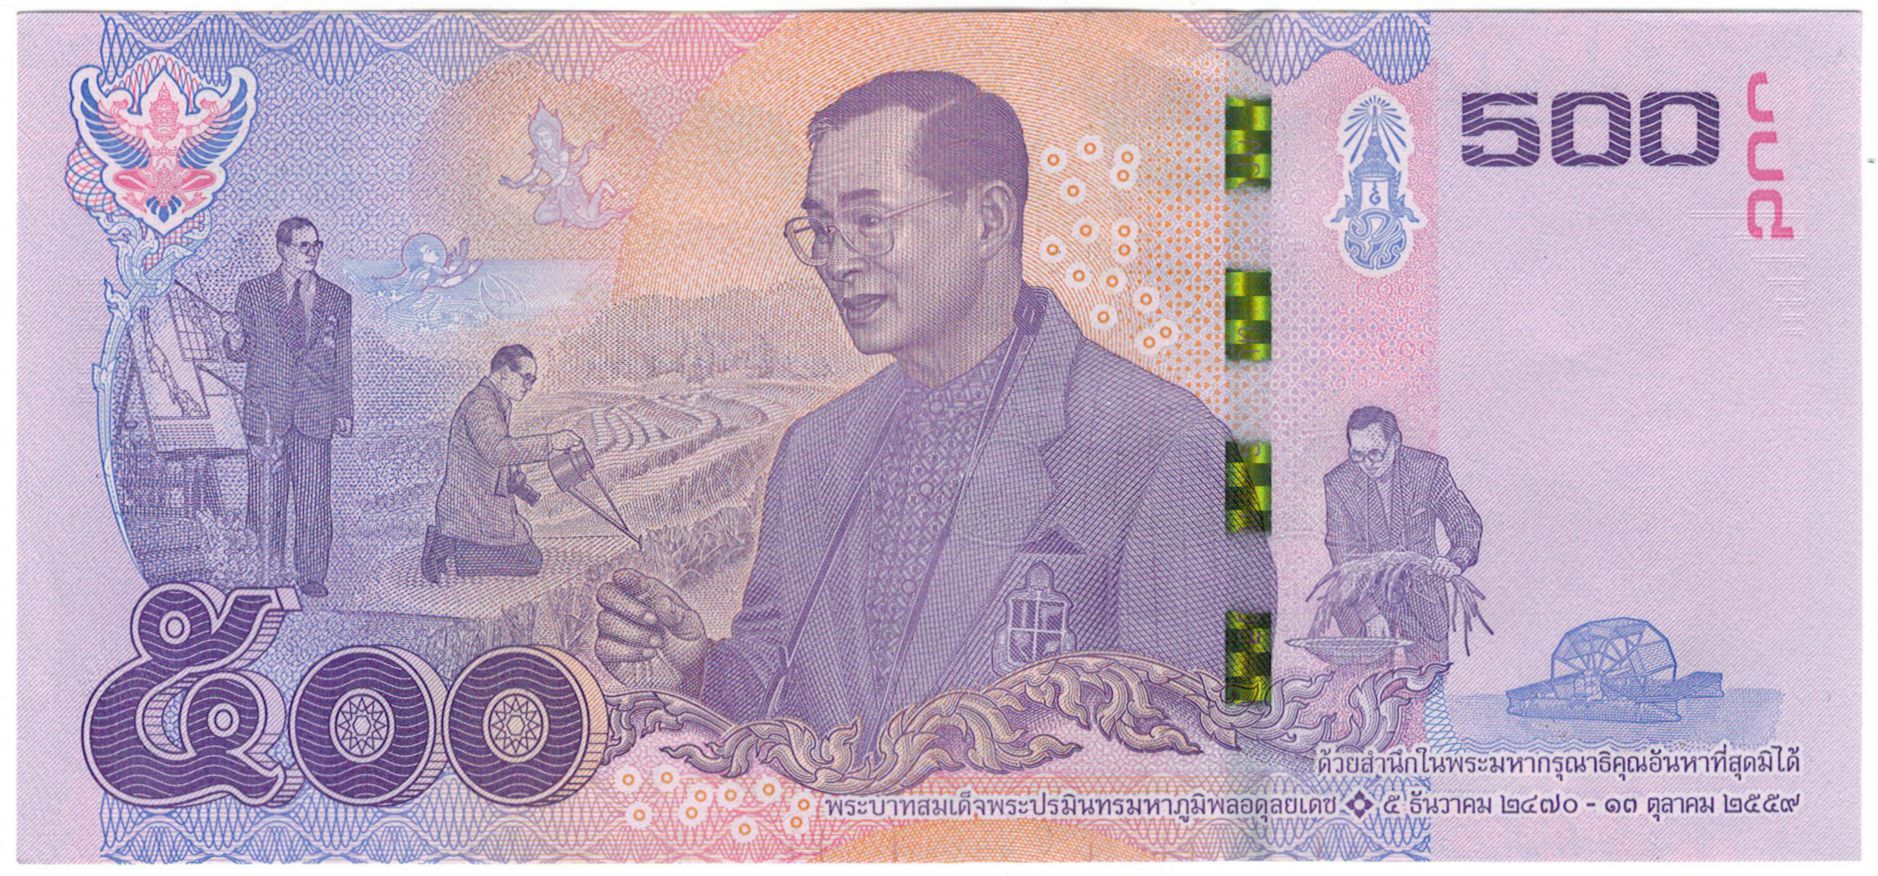 500 батов в рублях. 500 Бат Тайланд. Банкнота 50 бат Таиланд 2017. Купюры Тайланда современные. Юбилейные банкноты Тайланда.